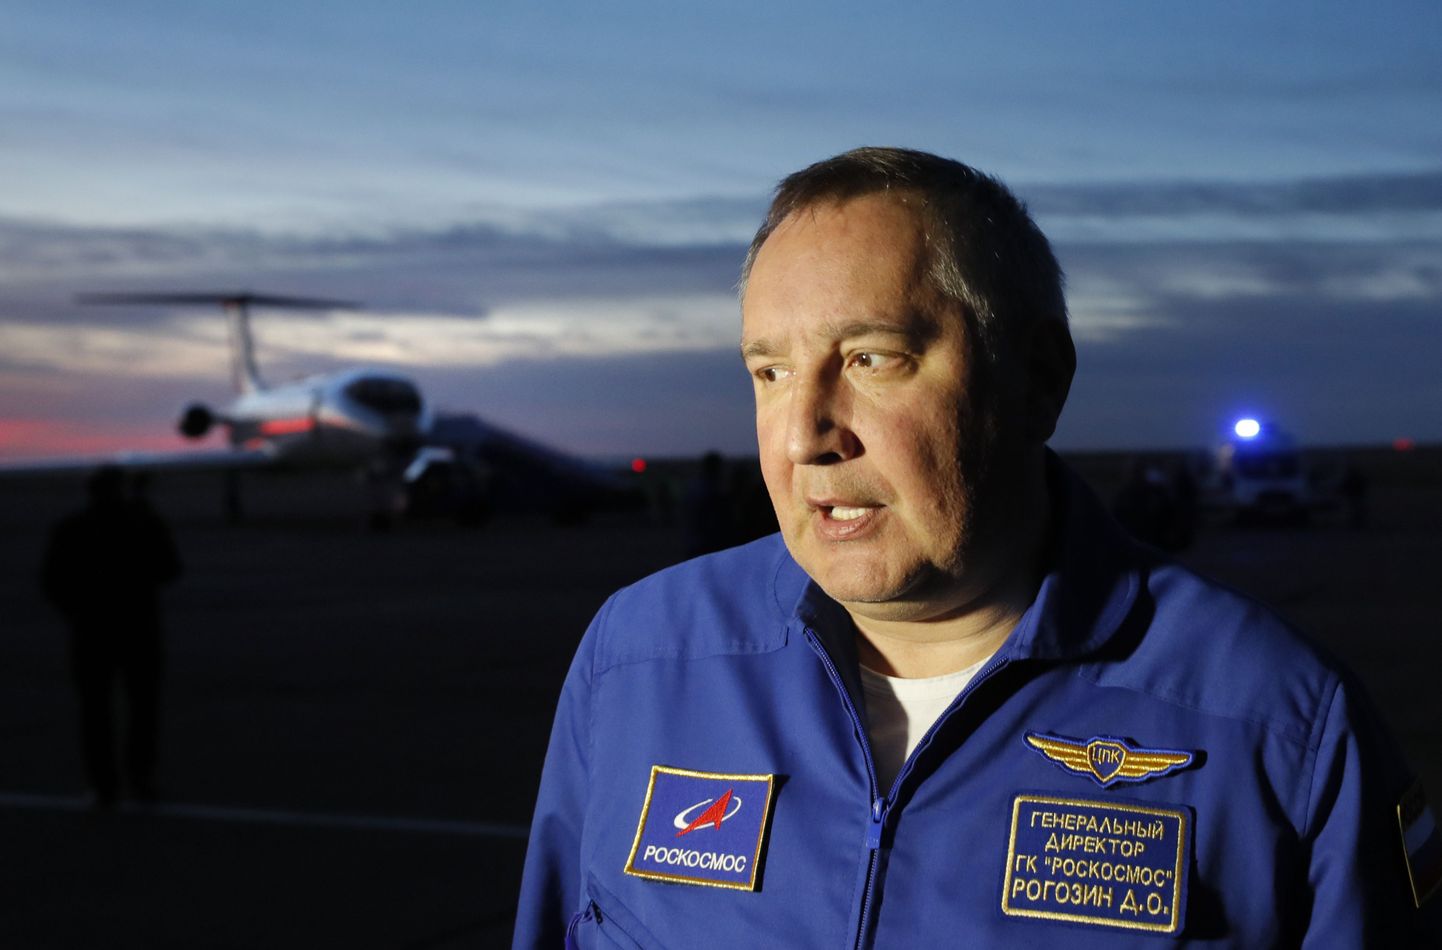 Krievijas kosmosa aģentūras “Roskosmos” vadītājs Dmitrijs Rogozins